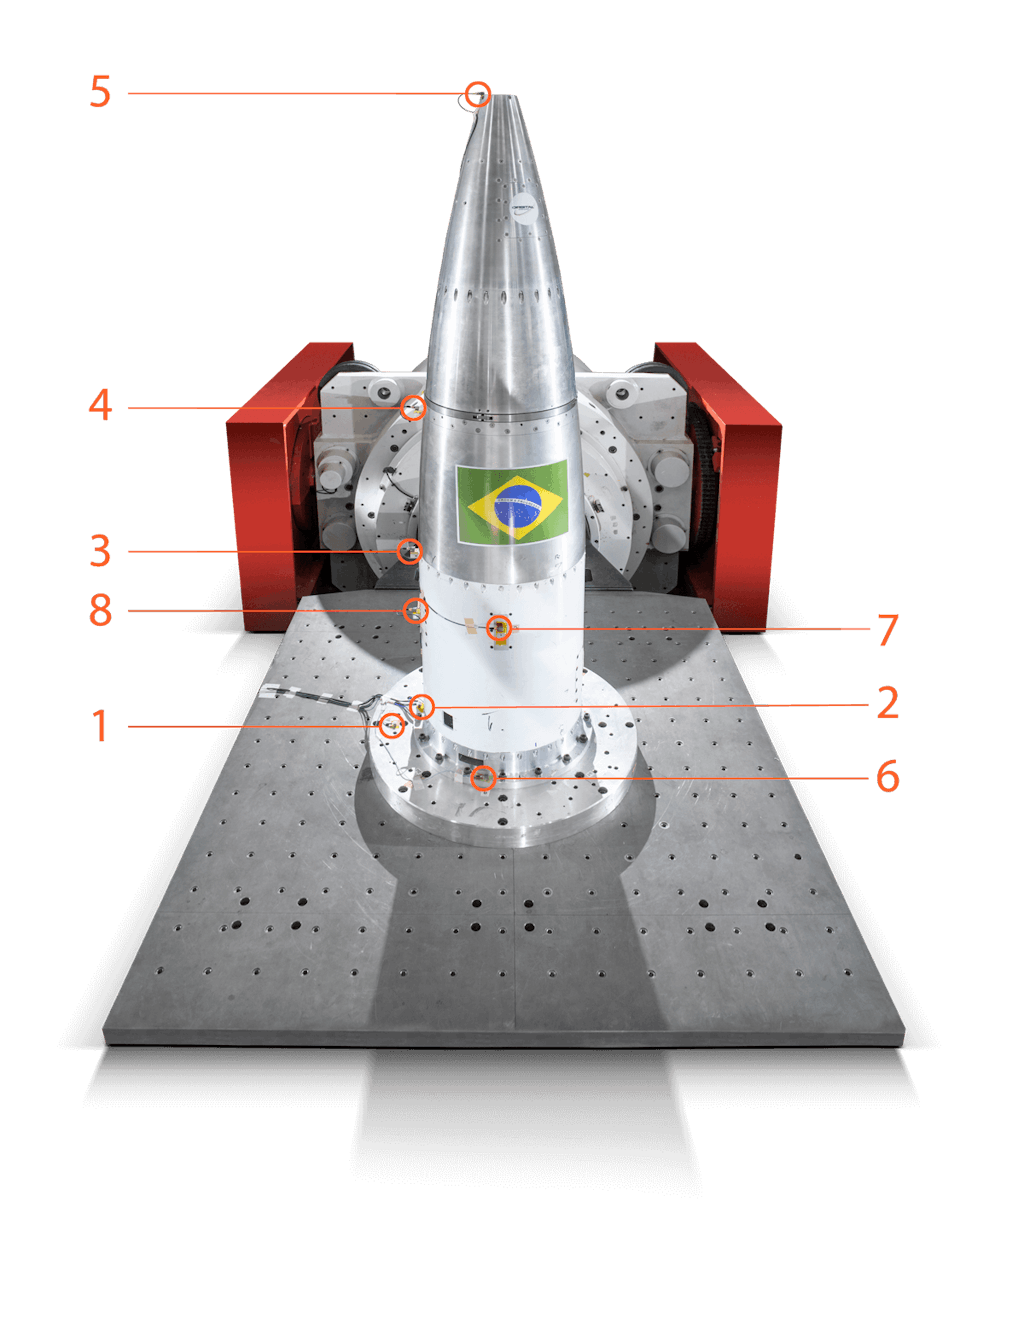 Le banc d'essai: positionnement des accéléromètres, 7 sur le cône de fusée et 1 sur la plaque adaptatrice fixée sur le bâtis du vibrateur